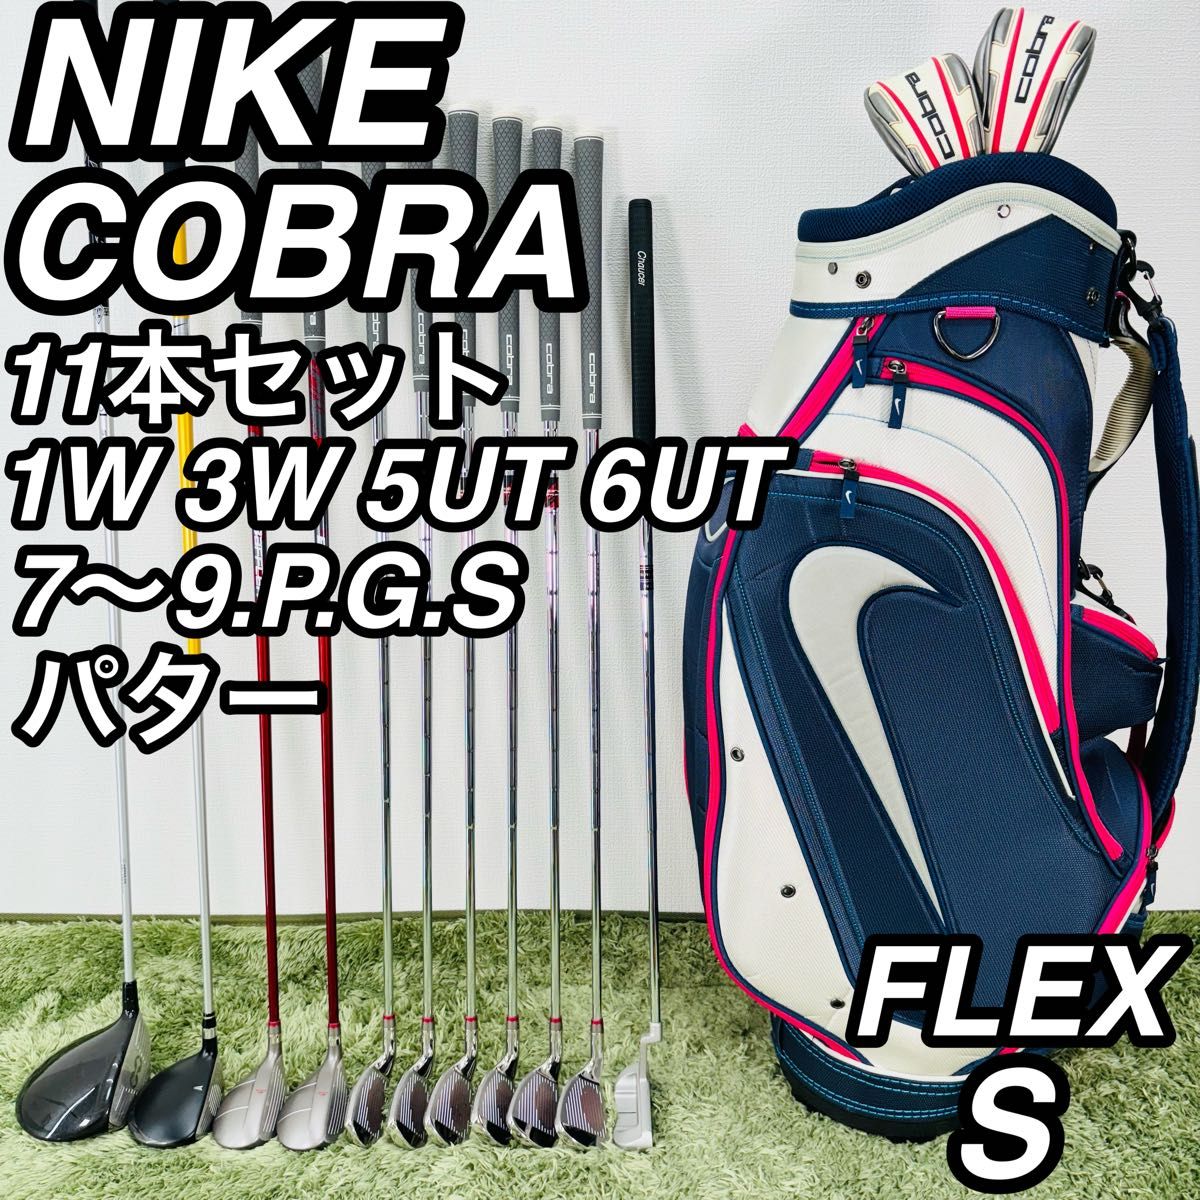 NIKE ナイキ COBRA コブラ 11本セット メンズゴルフ 初心者 入門